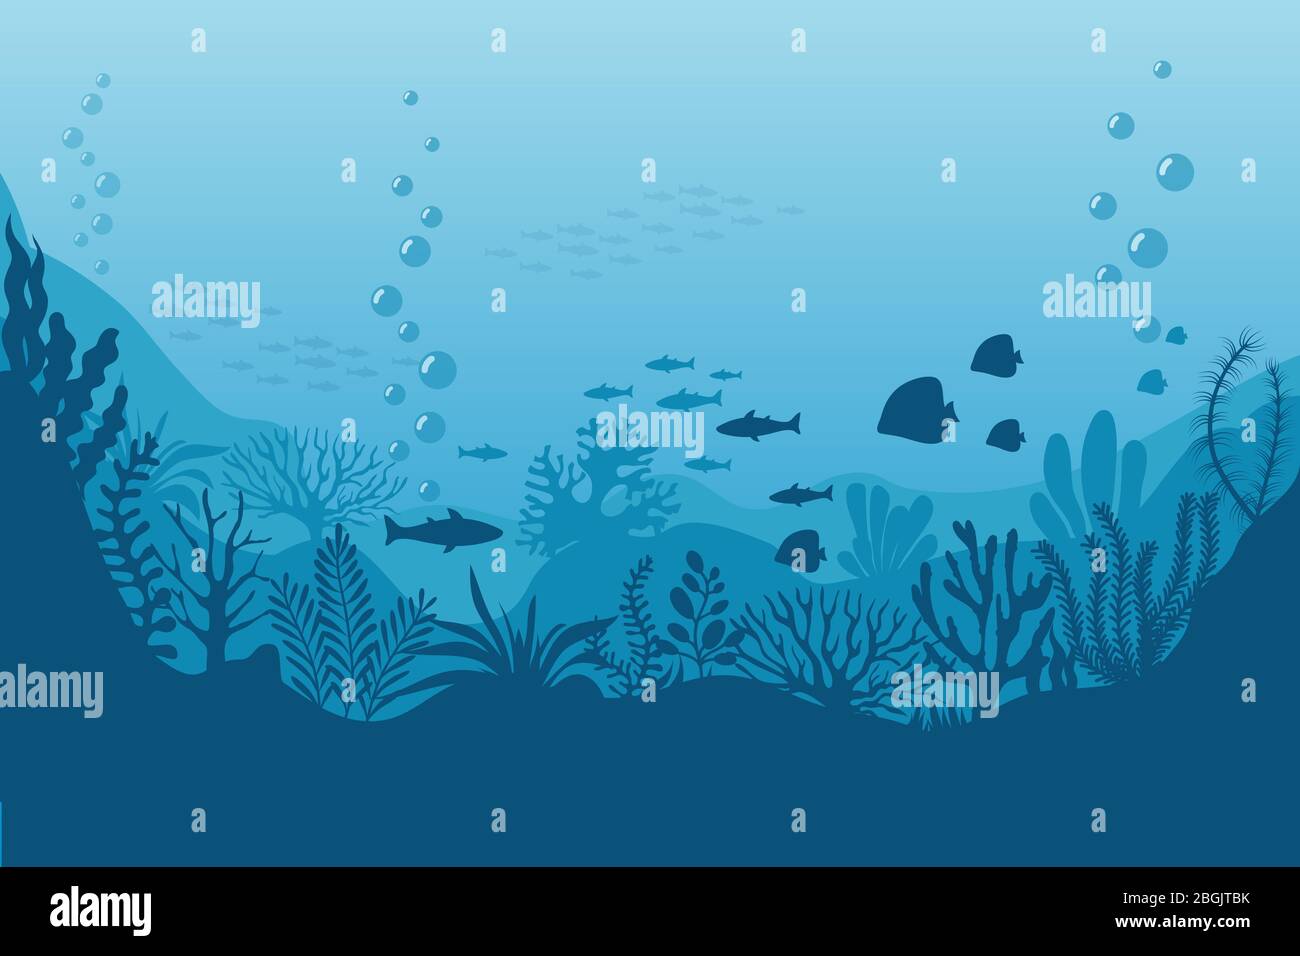 Meer Unterwasser Hintergrund. Meeresboden mit Algen. Vektor-Szene. Ocean Szene, Meer unter Wasser, Unterwasserleben auf der Unterseite Abbildung Stock Vektor